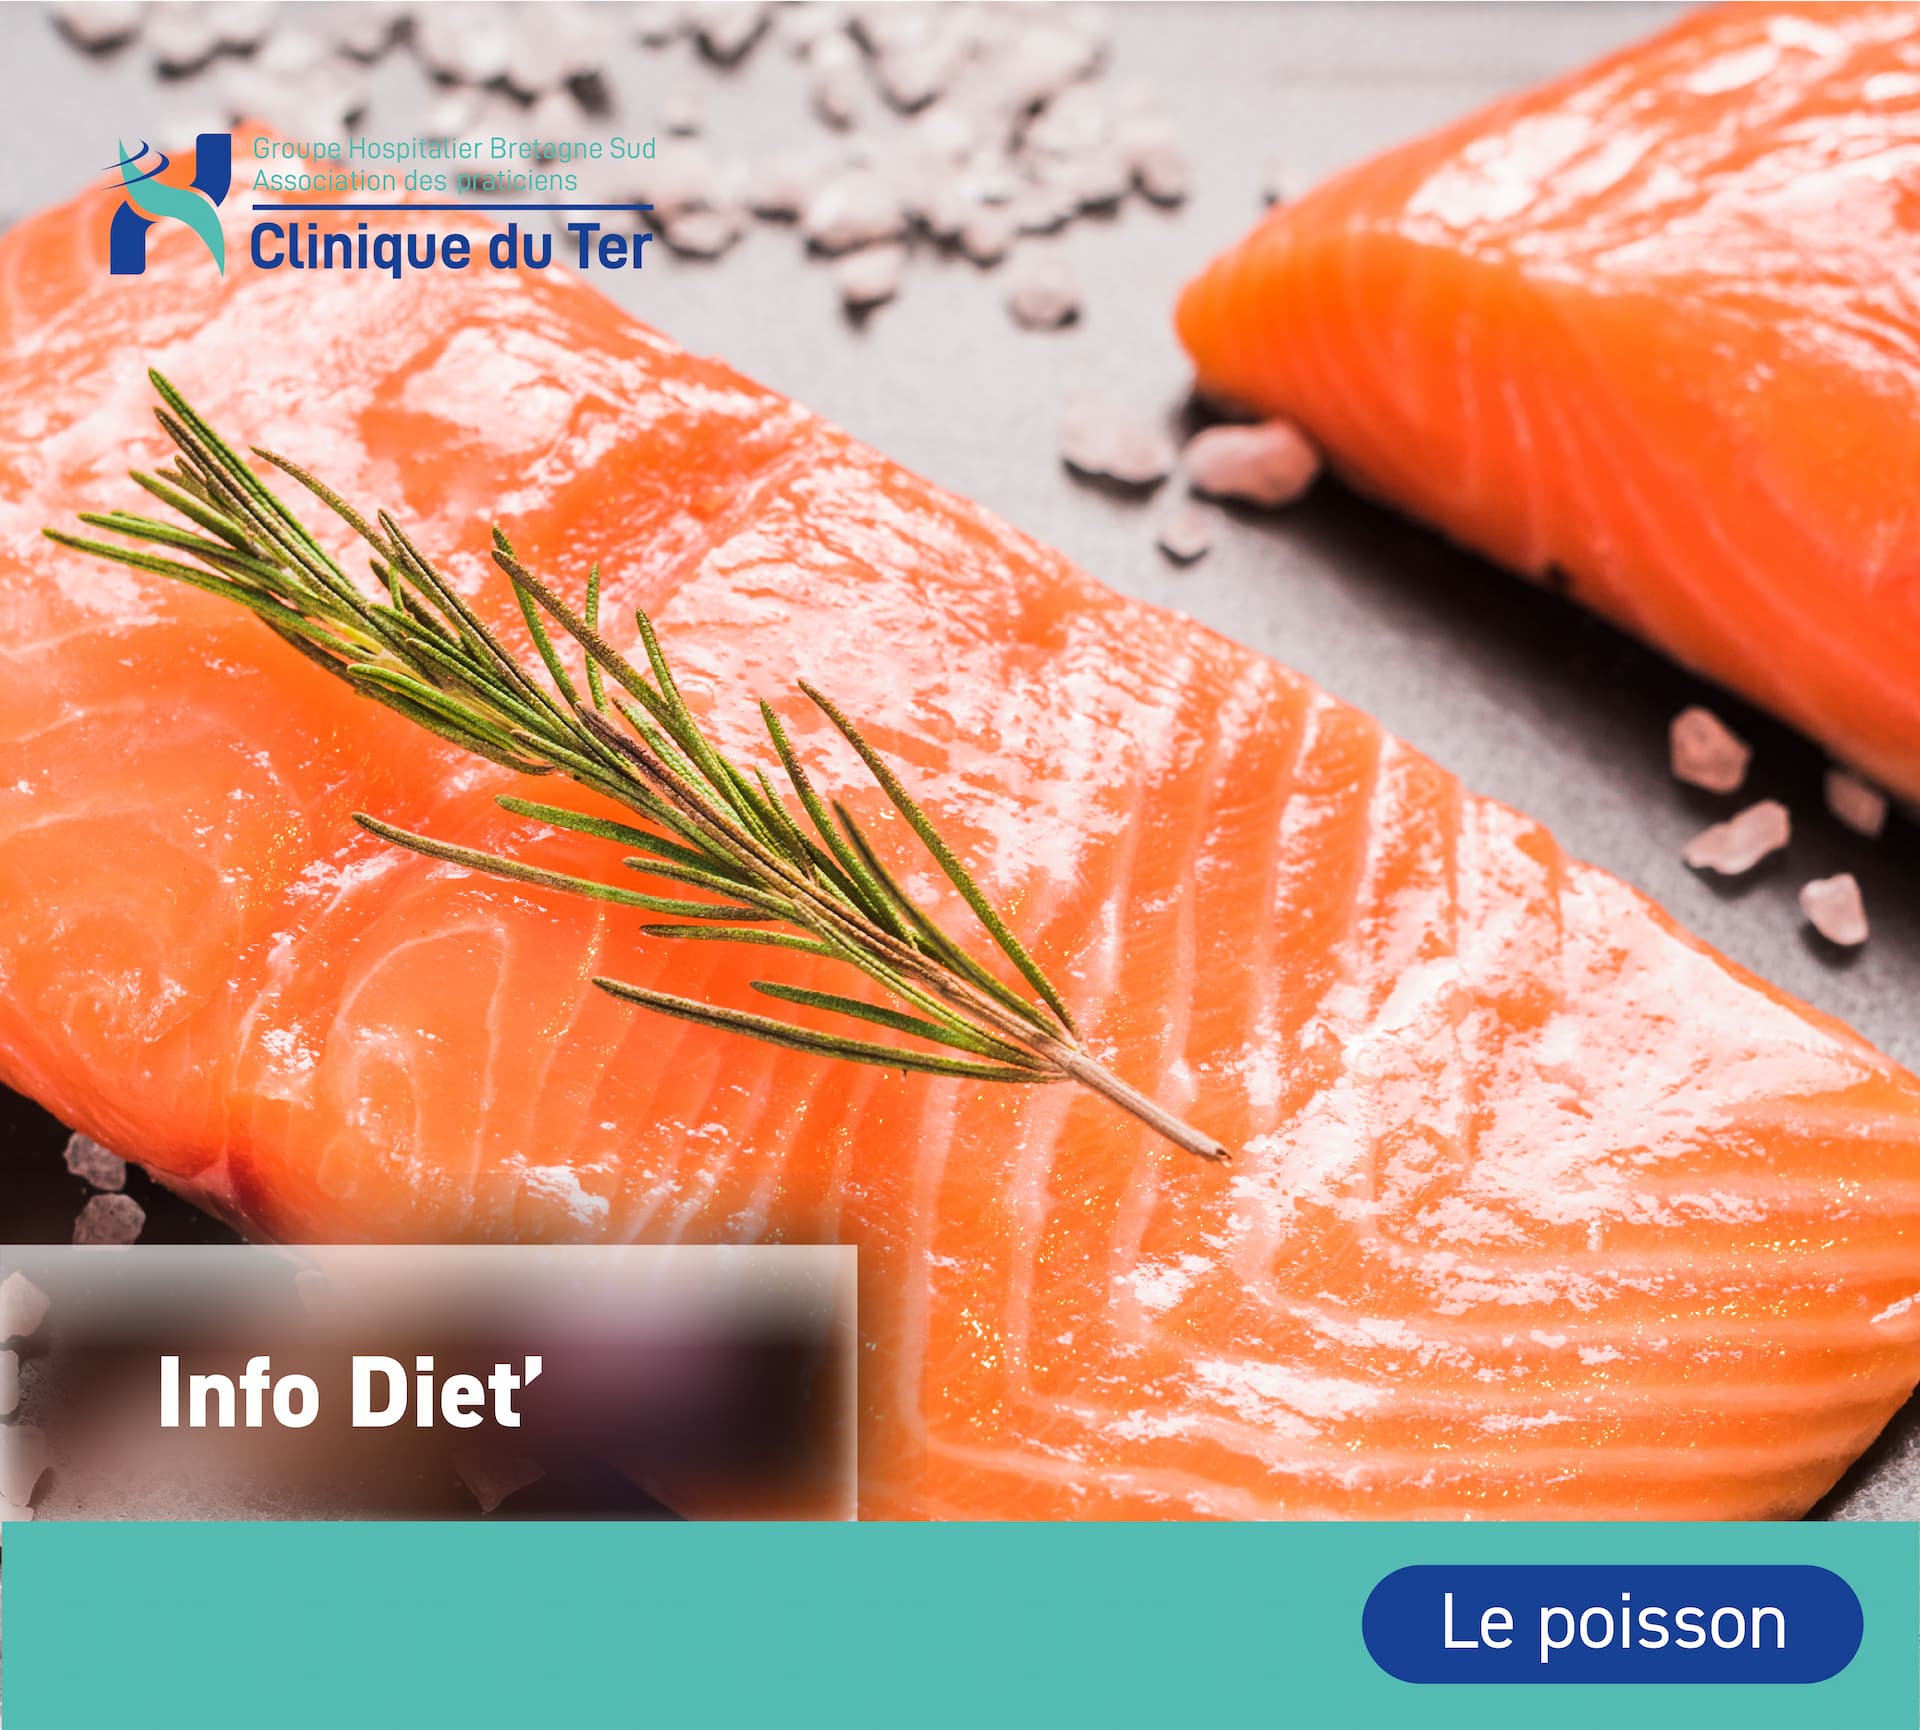 Info diététique : Le poisson est une source privilégiée en acides gras oméga-3